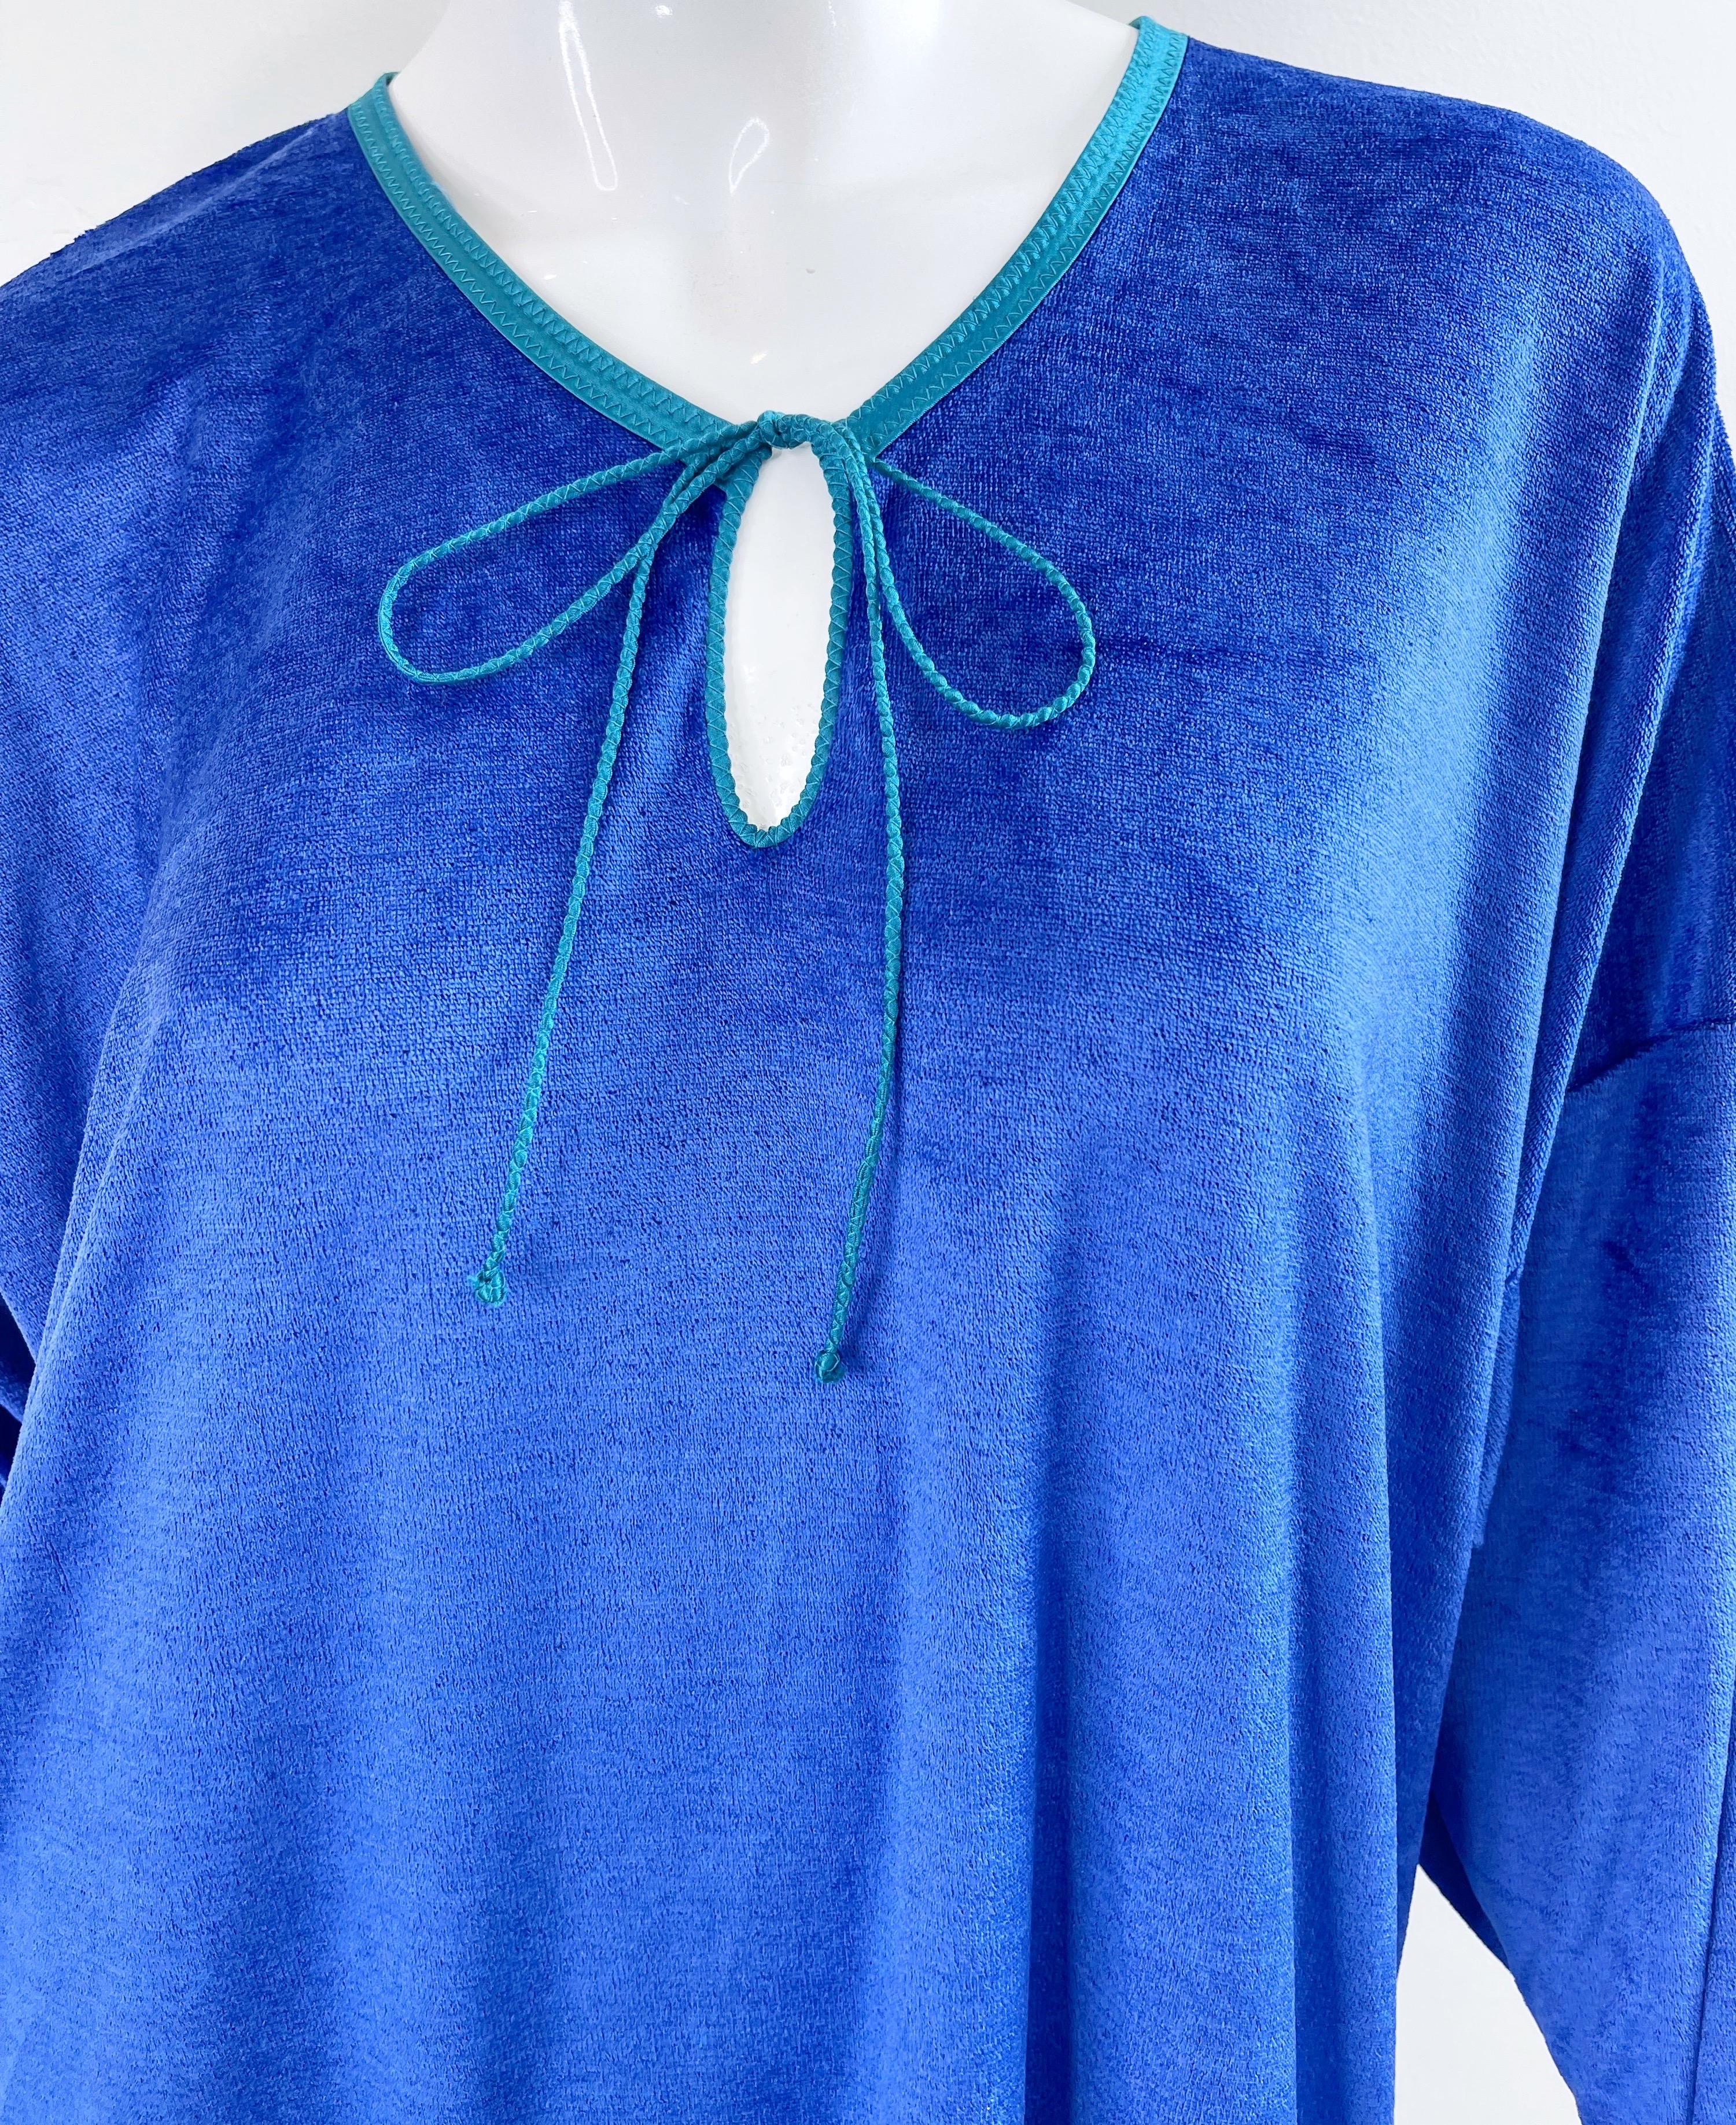 1980s Mary McFadden Royal Blue Teal Velour Vintage 80s Caftan Maxi Dress Kaftan For Sale 1